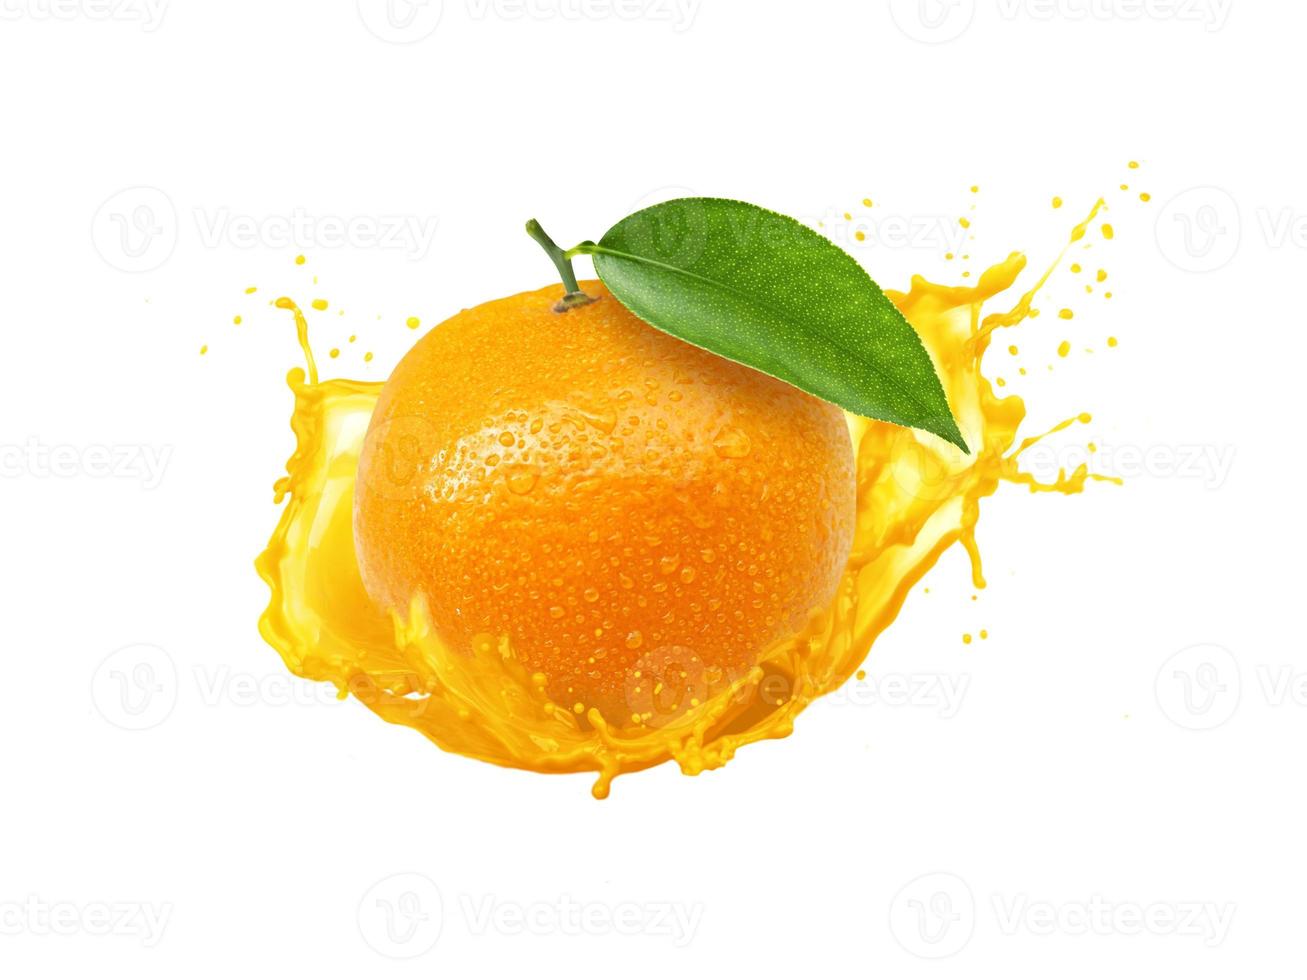 laranja com respingo isolado no fundo branco,retoque de foto de suco de laranja